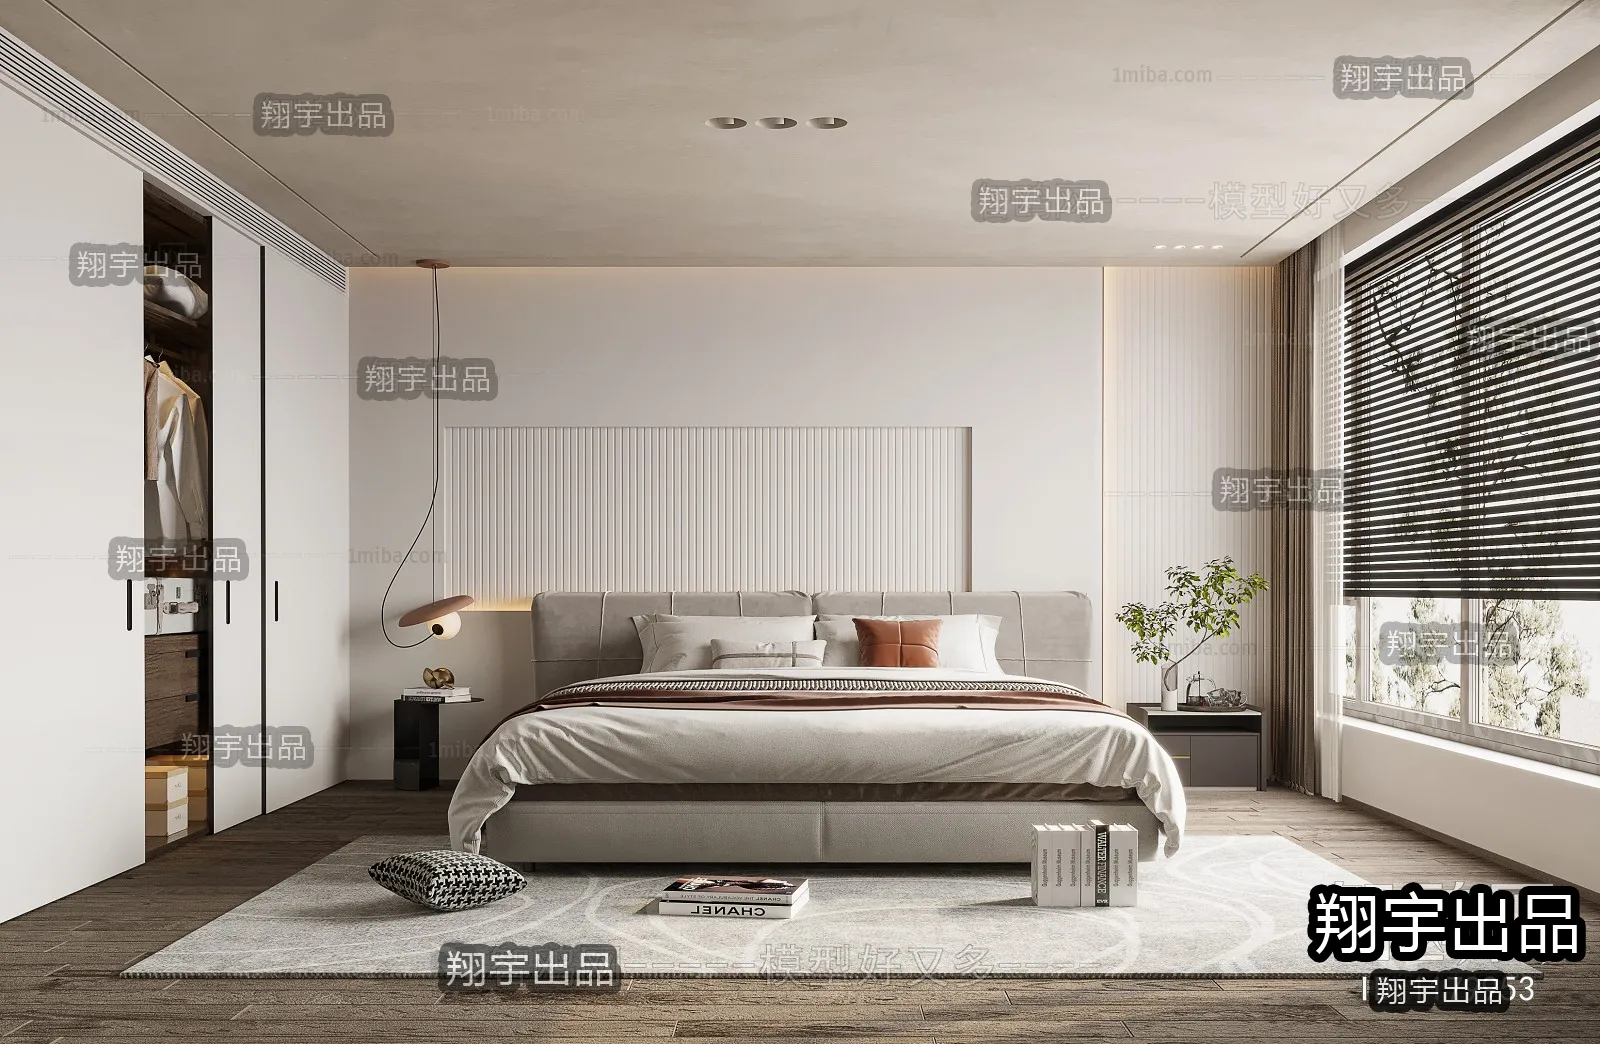 Bedroom – Modern Interior Design – 3D Models – 030